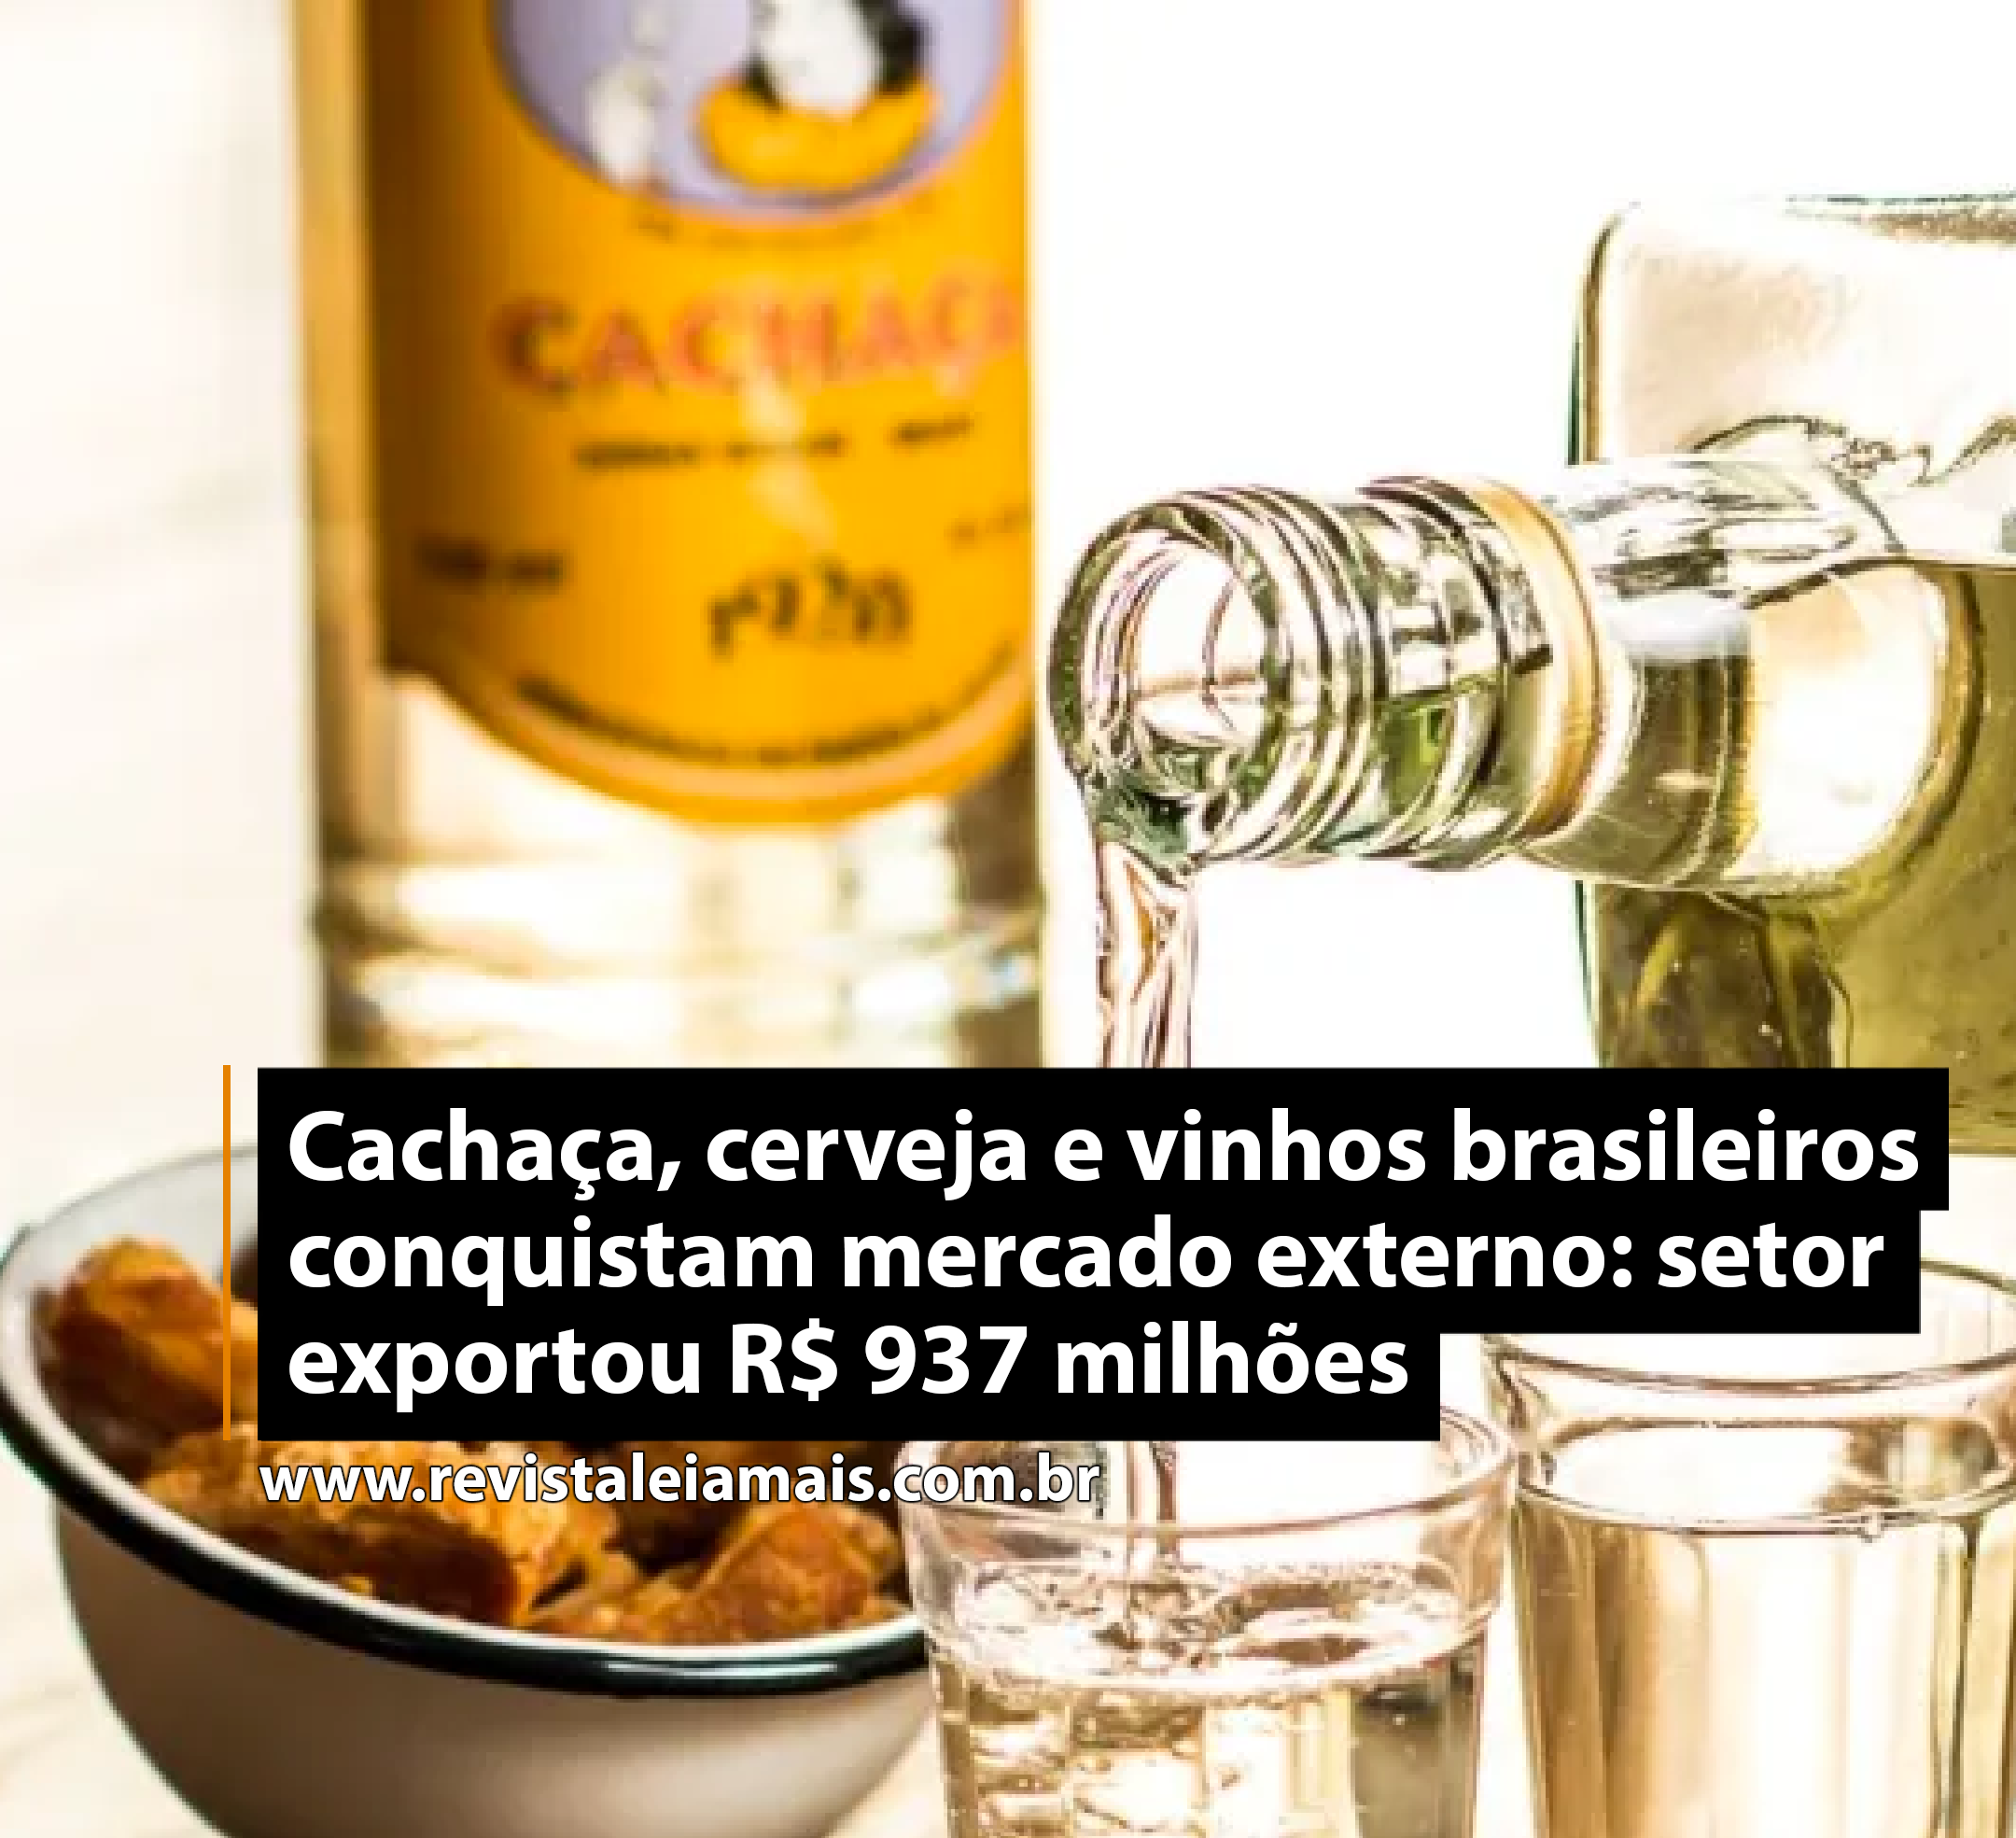 Cachaça, cerveja e vinhos brasileiros conquistam mercado externo: setor exportou R$ 937 milhões